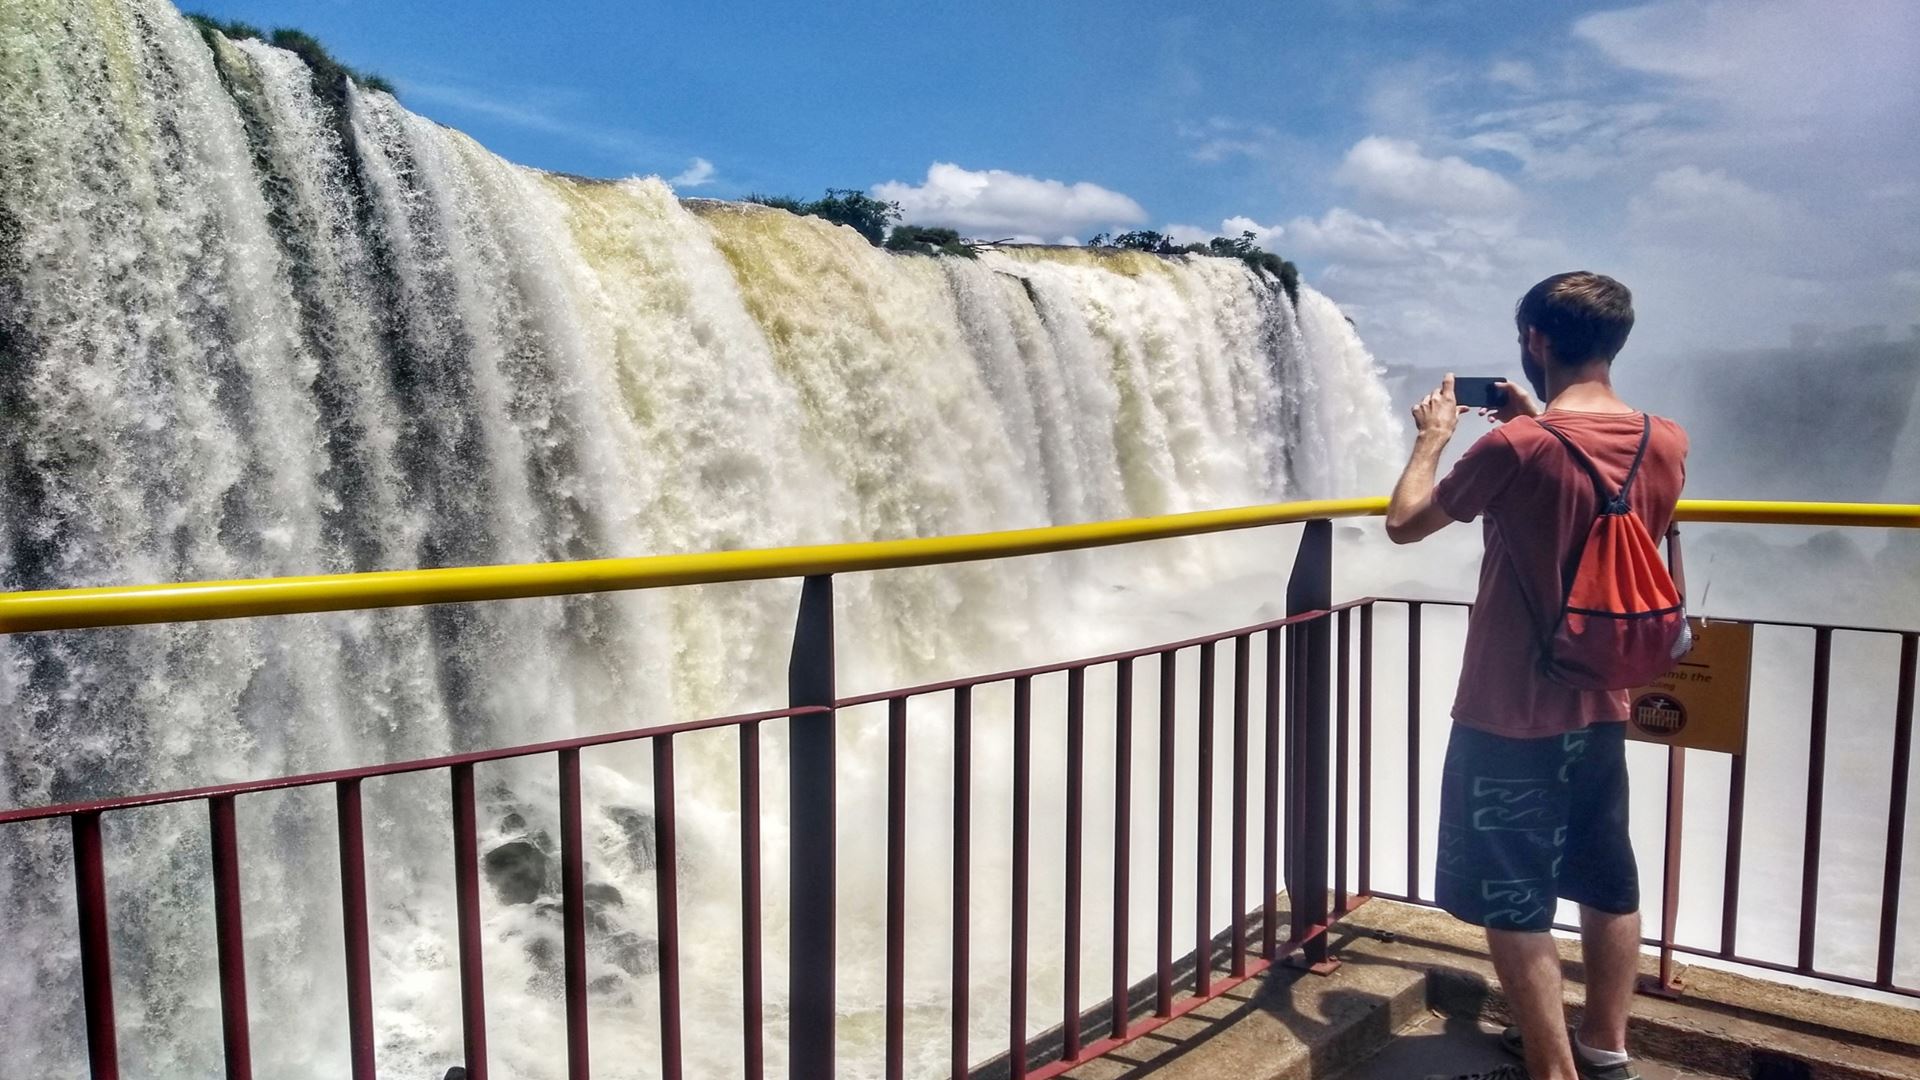 When to travel to Iguazu